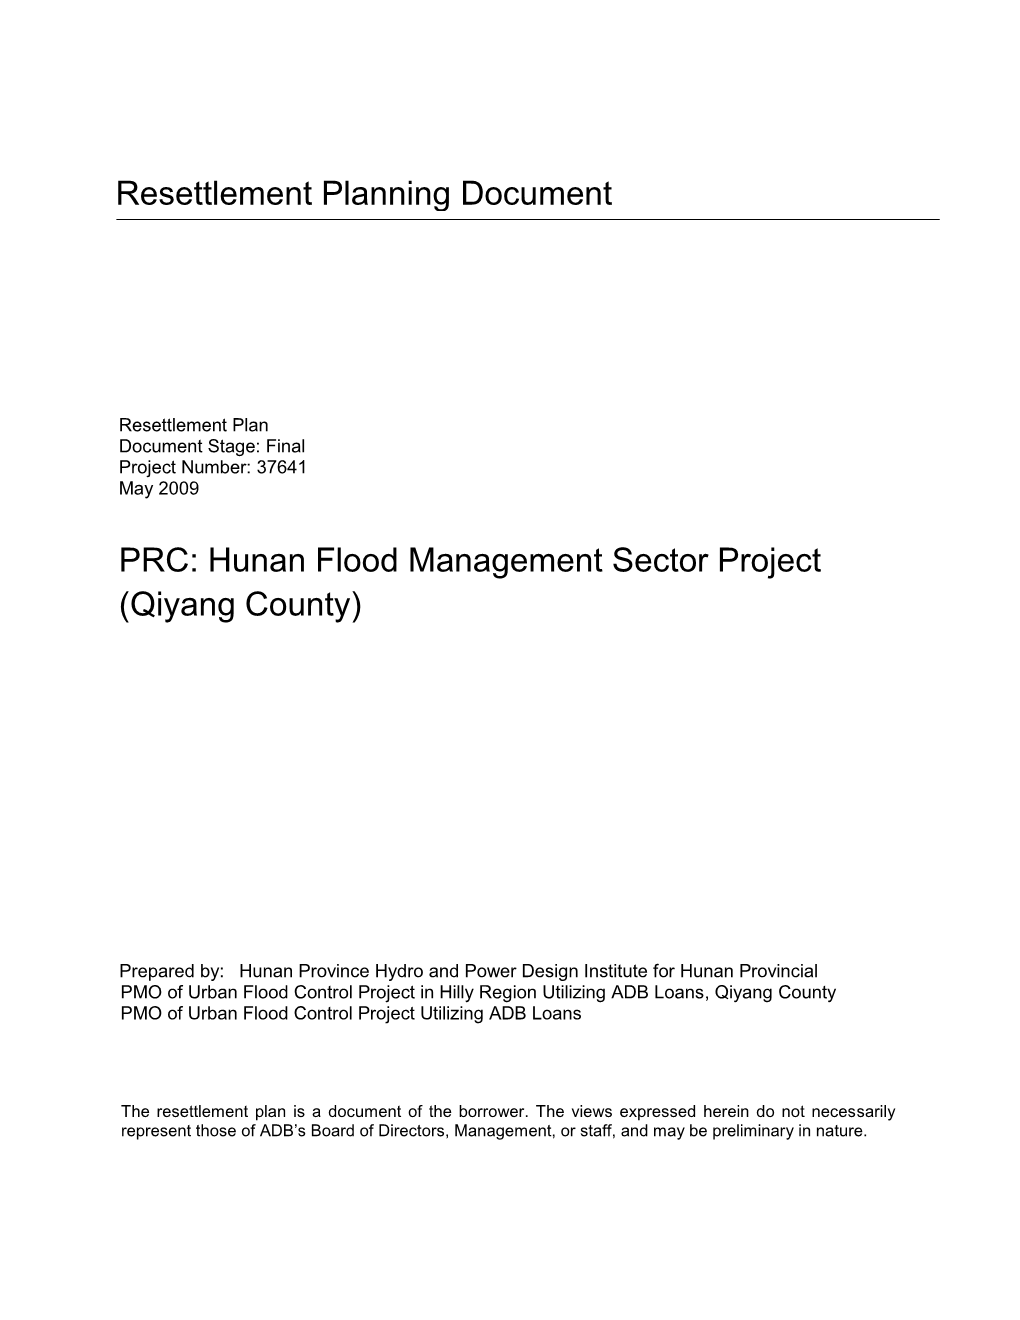 Hunan Flood Management Sector Project (Qiyang County)